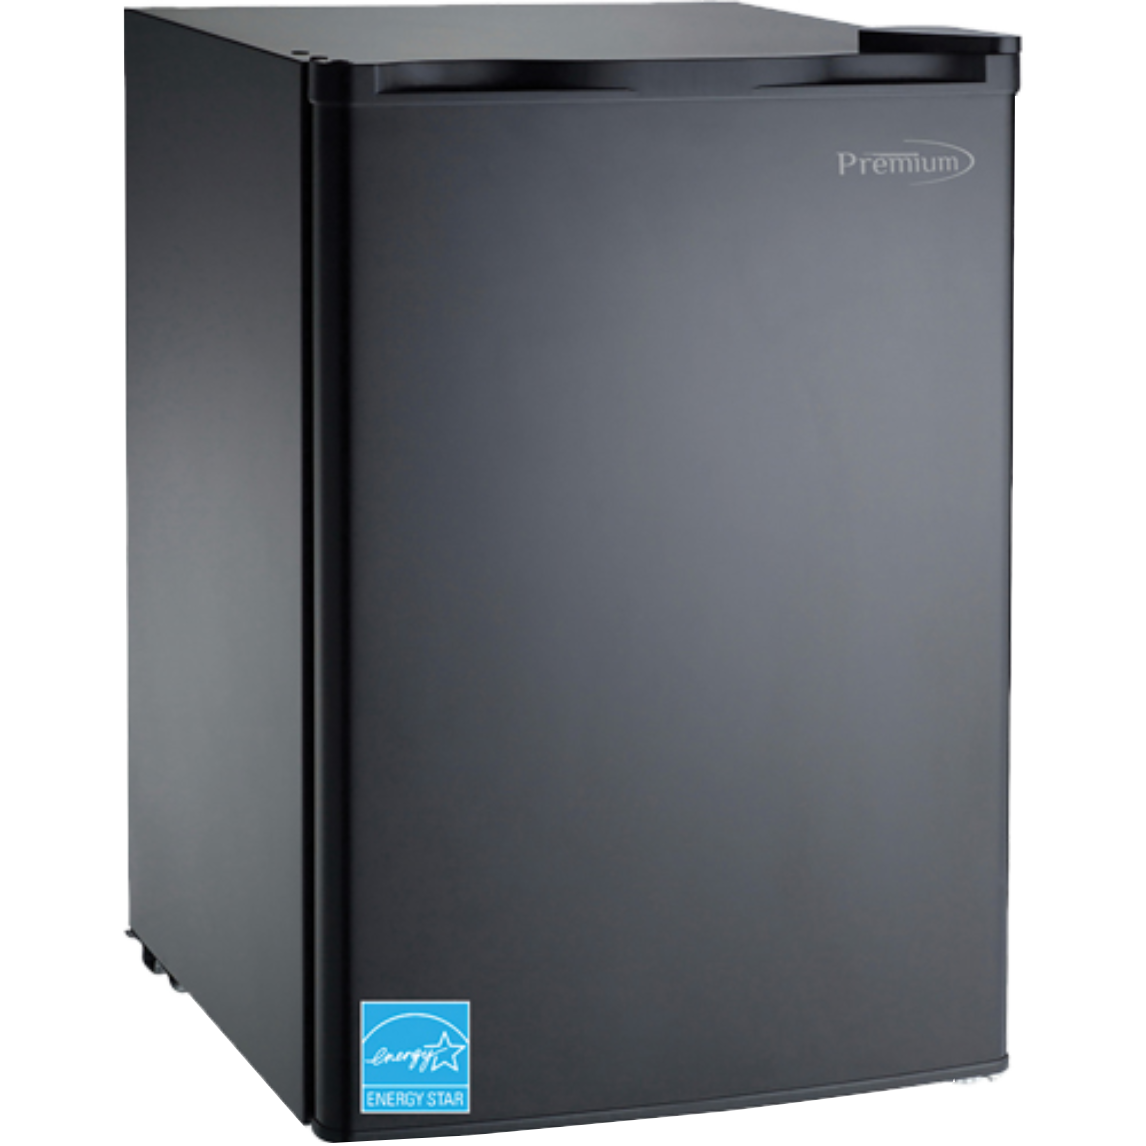 Premium - 2.5 CuFt Compact Refrigerator In Black